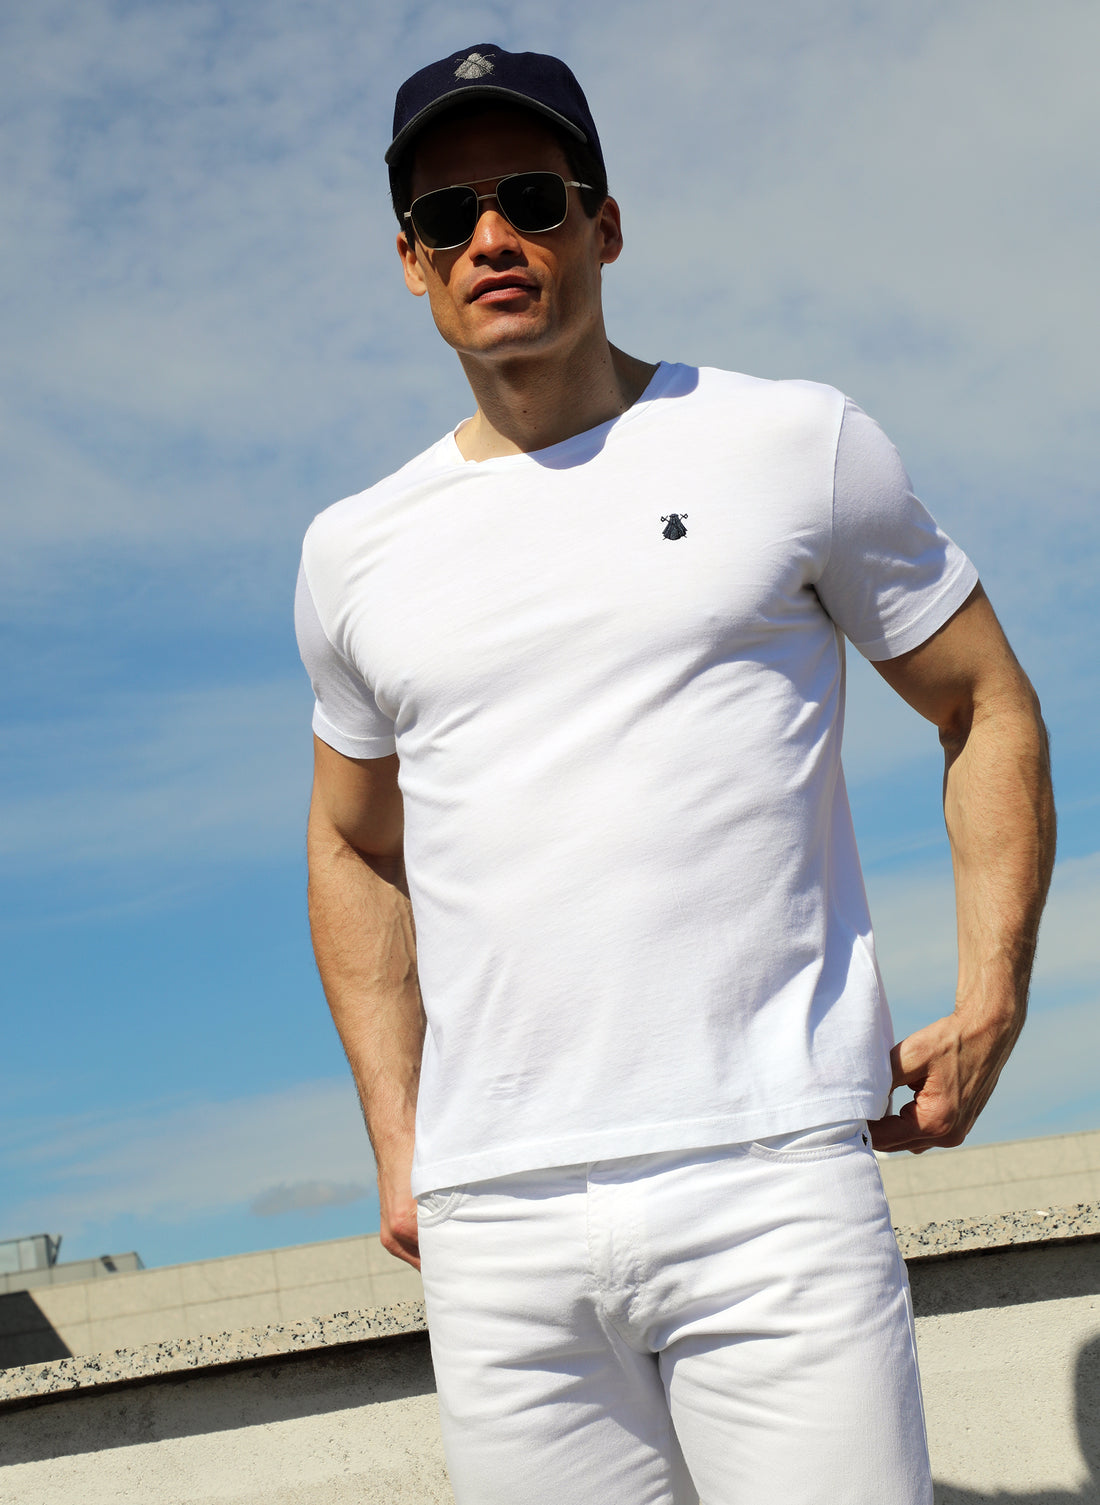 Teinture de t-shirt blanc dans les vêtements pour hommes